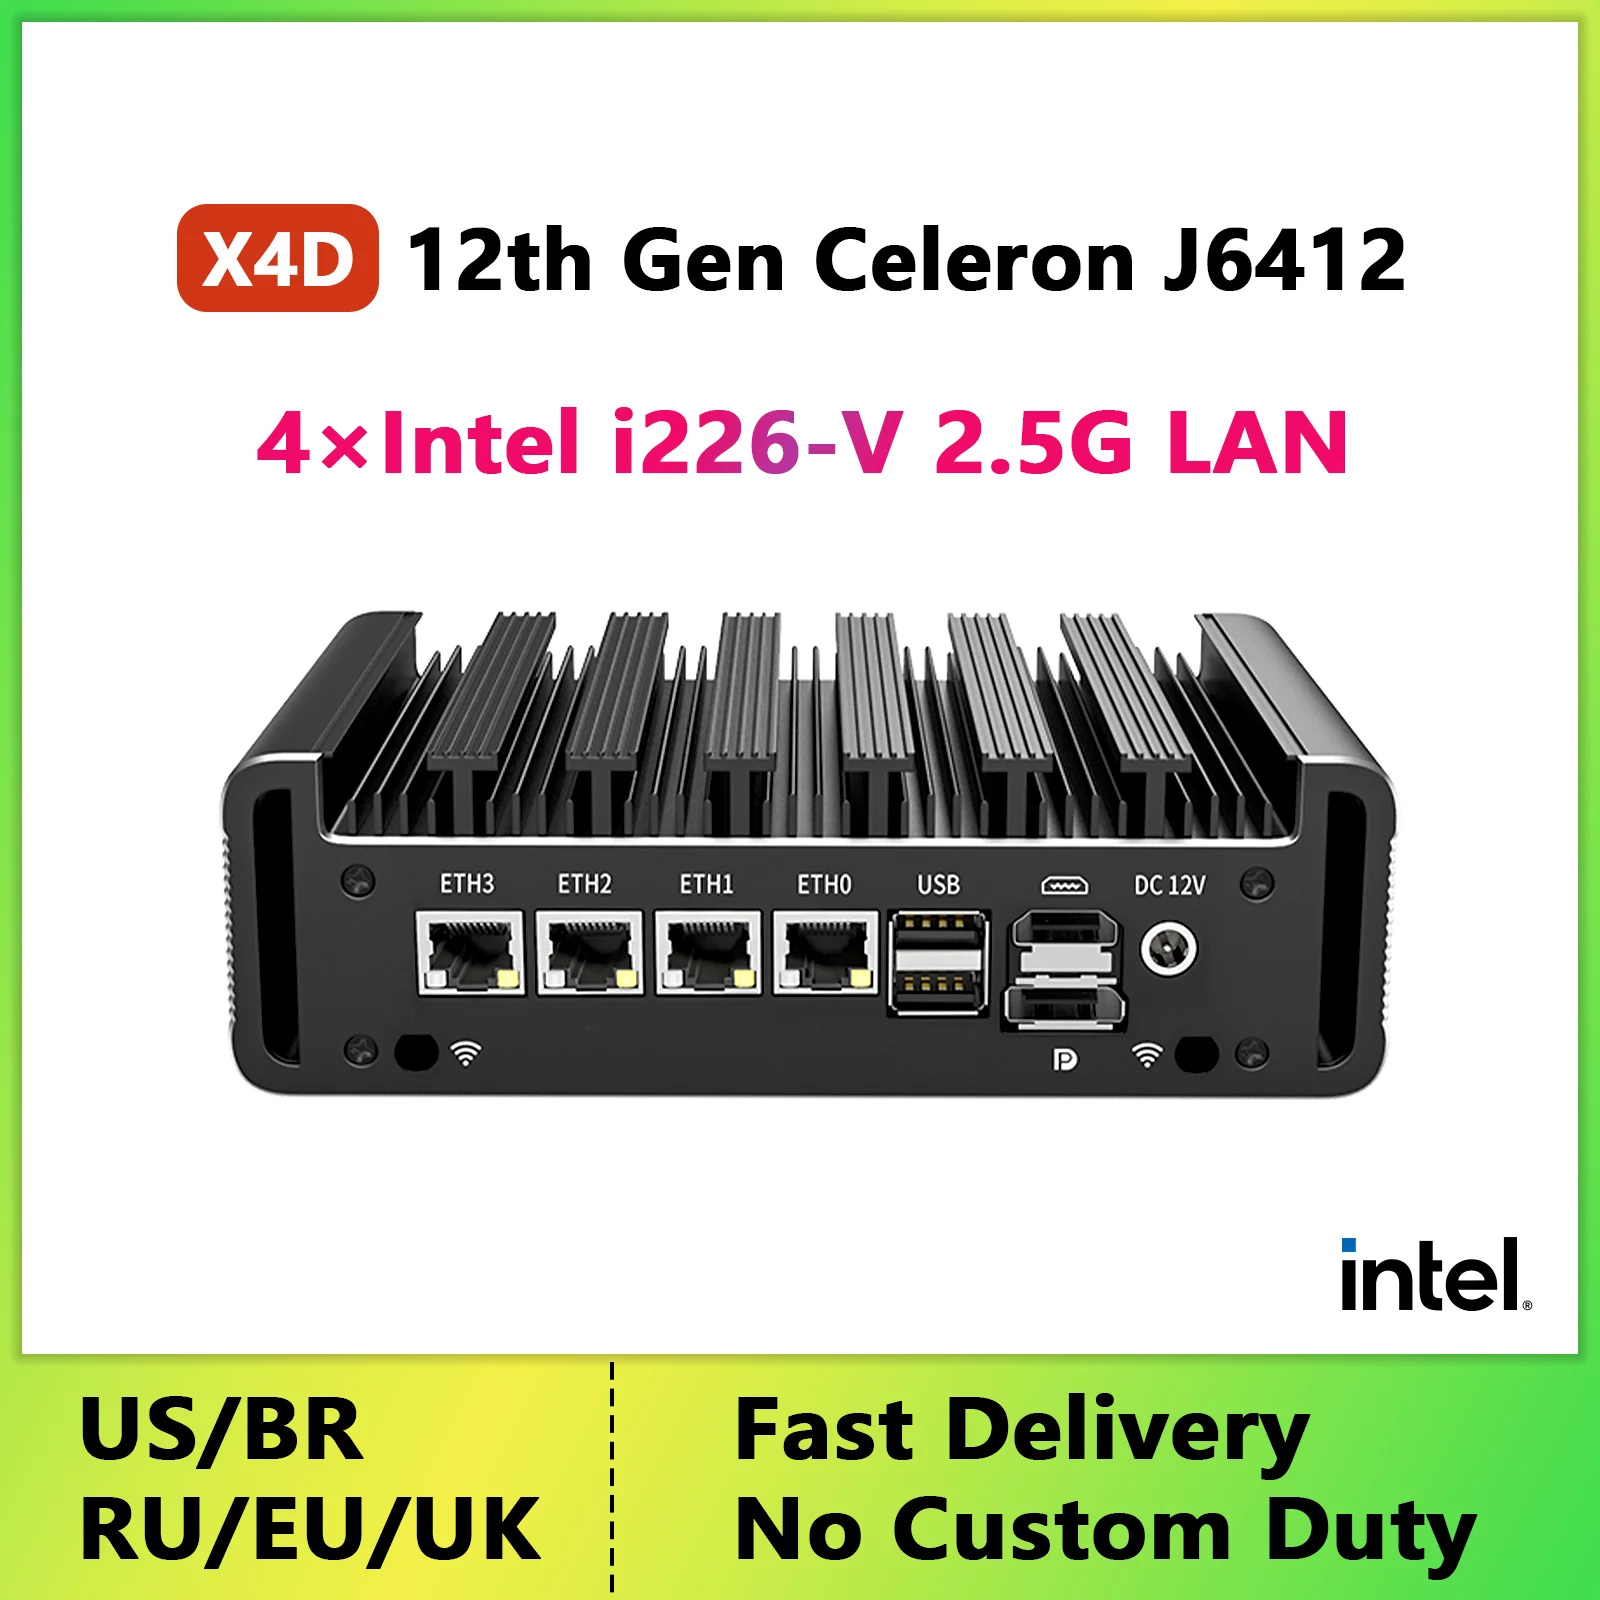 

pfSense Mini PC Fanless 12th Gen Celeron J6412 Firewall Appliance 4*Intel i226 2.5G LAN 2*RS232 COM OPNsense VPN Soft Router